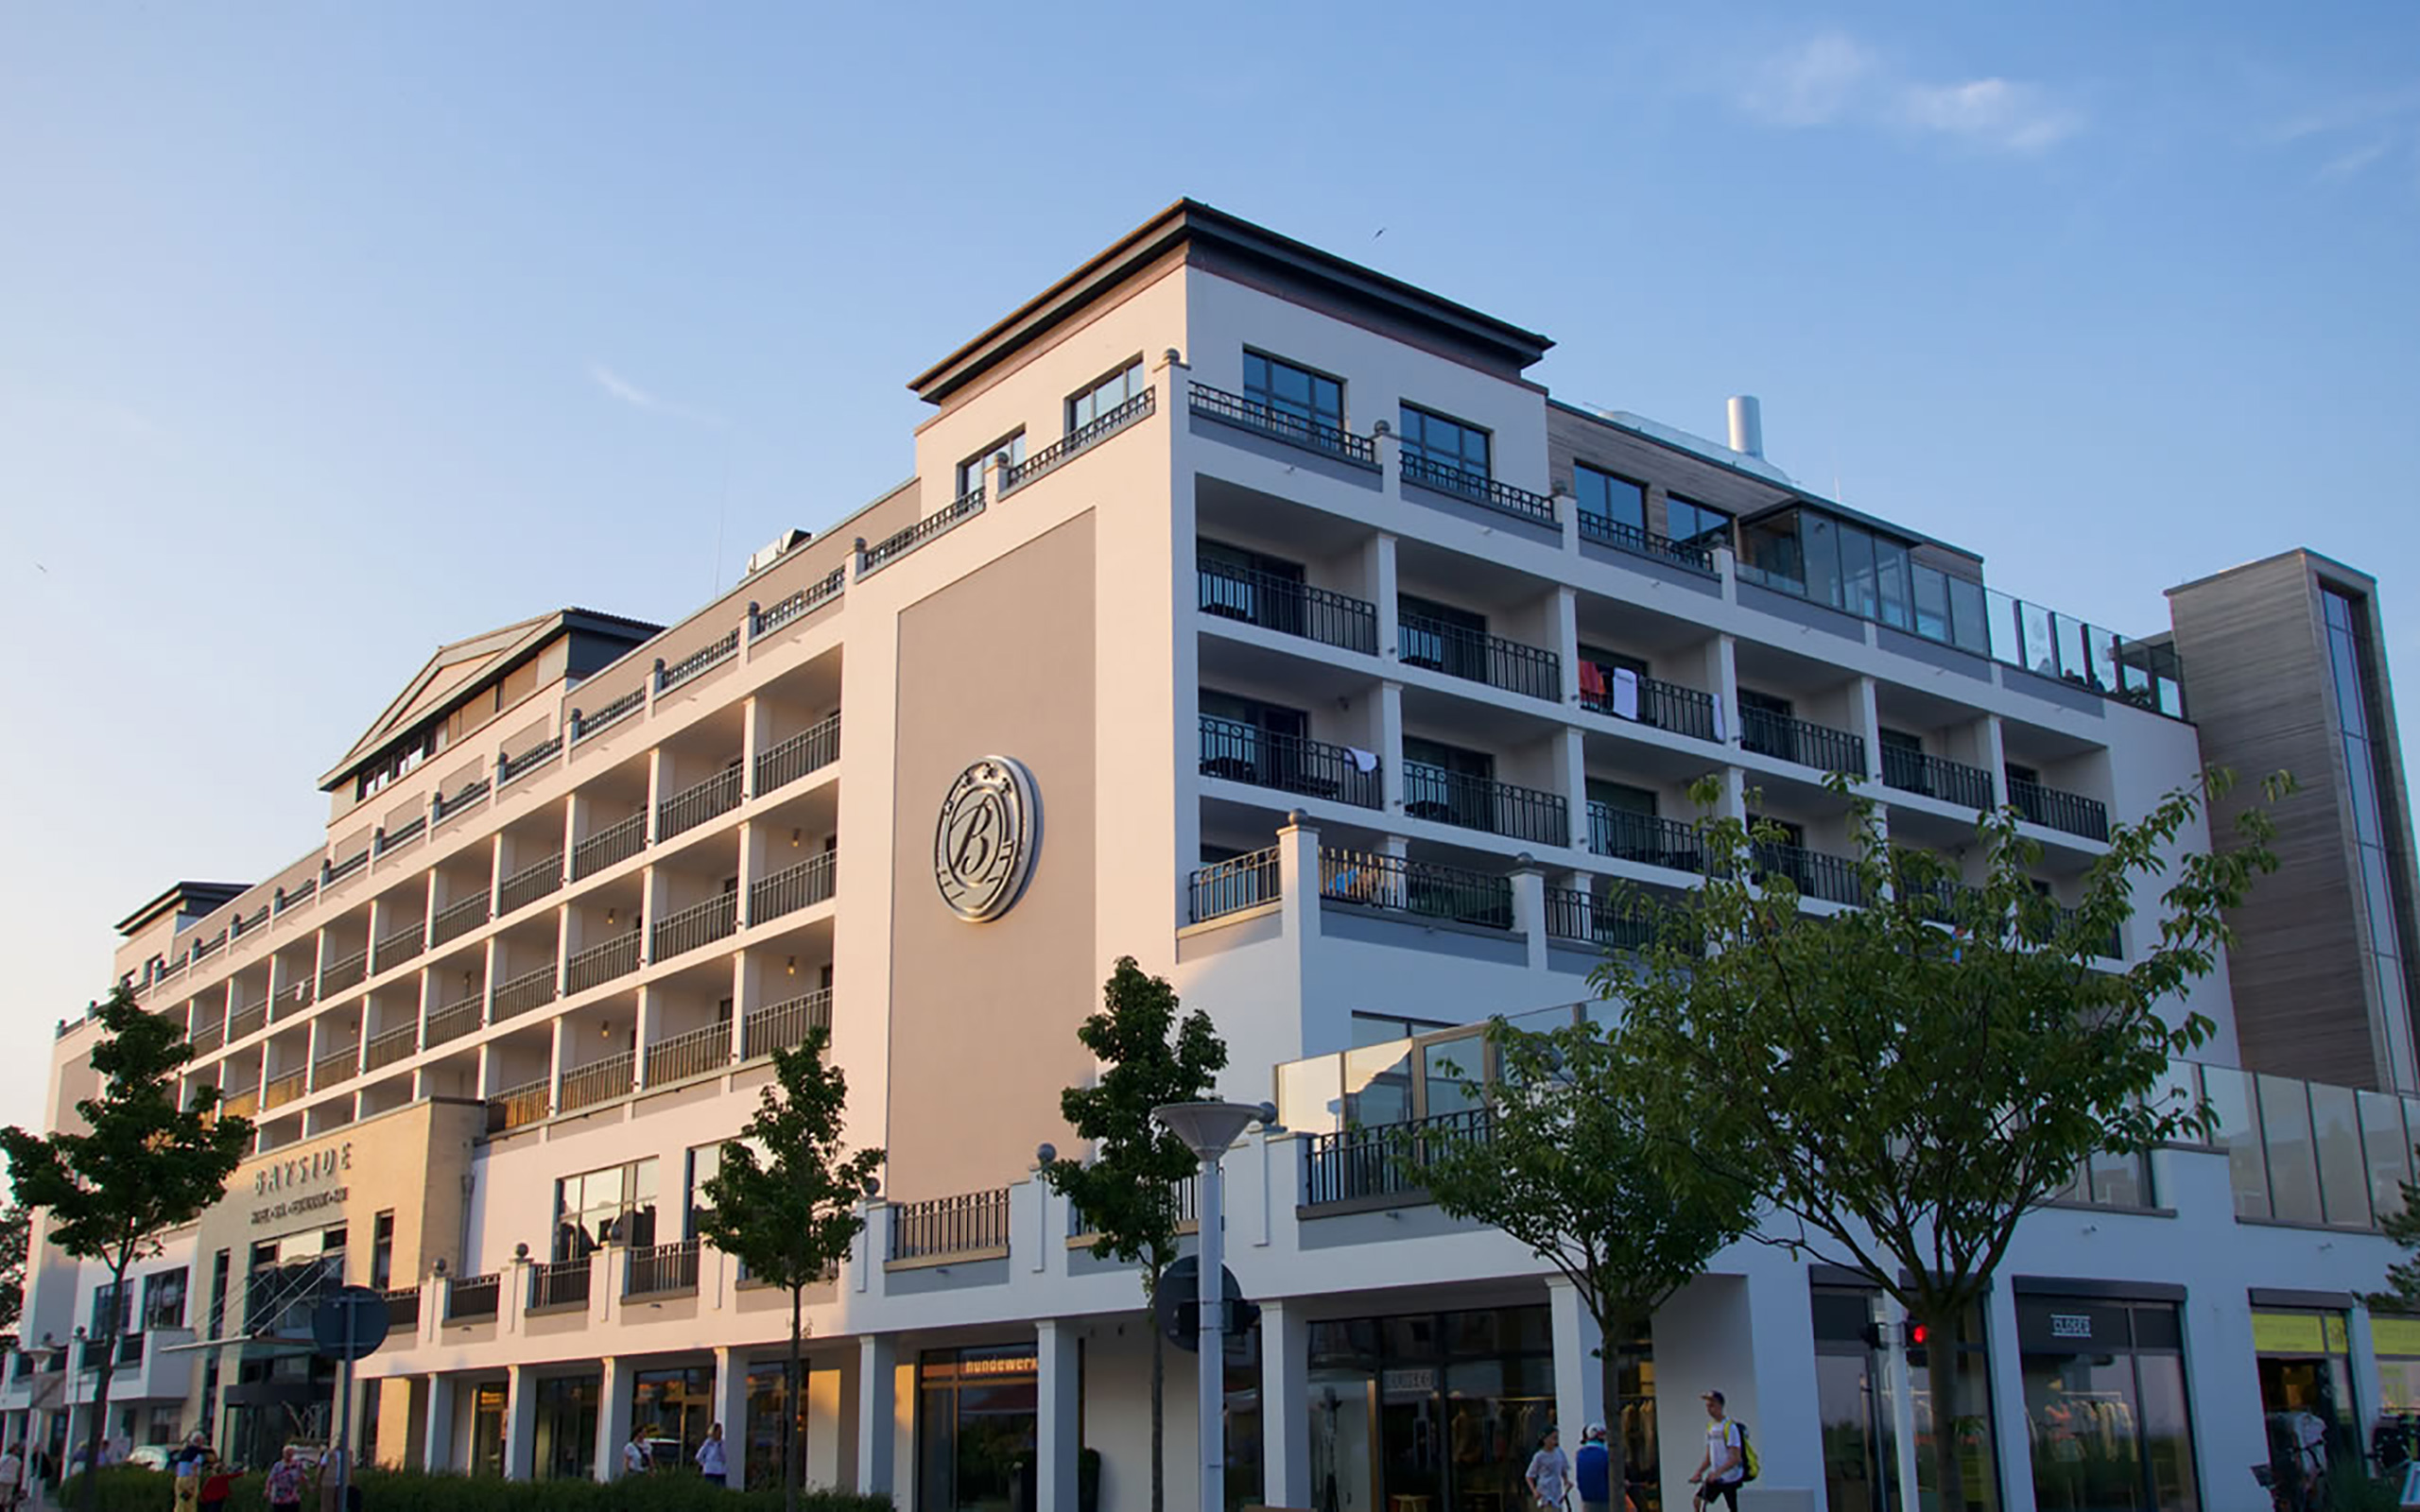 BAYSIDE Hotel in Scharbeutz